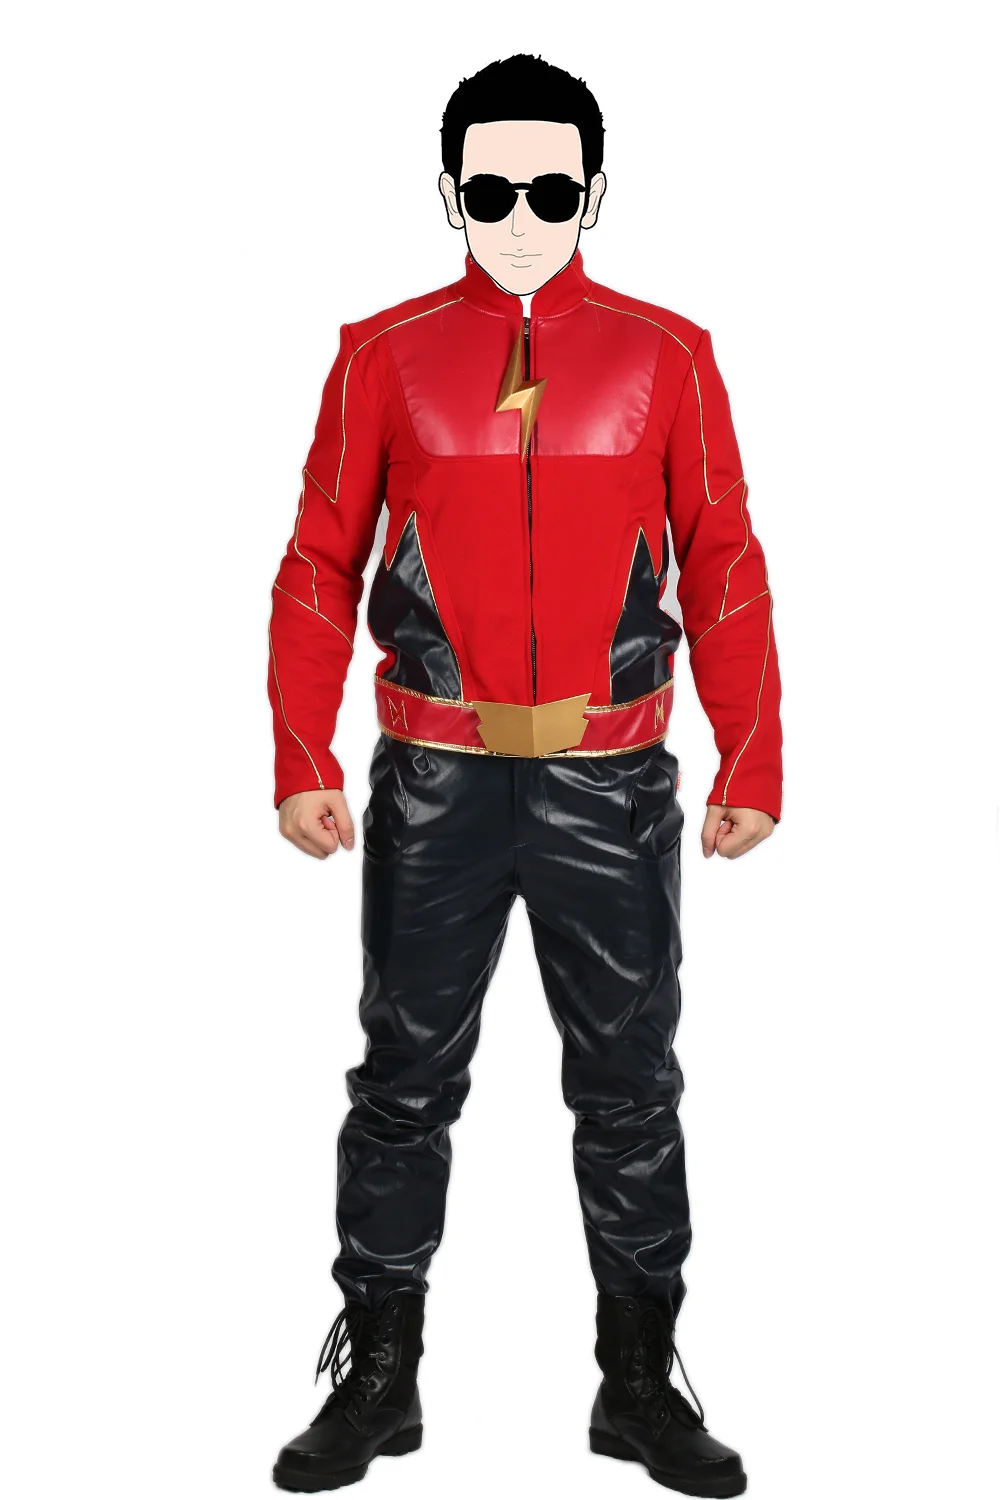 X-COSTUME распродажа 45% скидка флэш сезон 2 Джей костюм garrick для косплея и Хэллоуина подарок для фанатов высокого качества